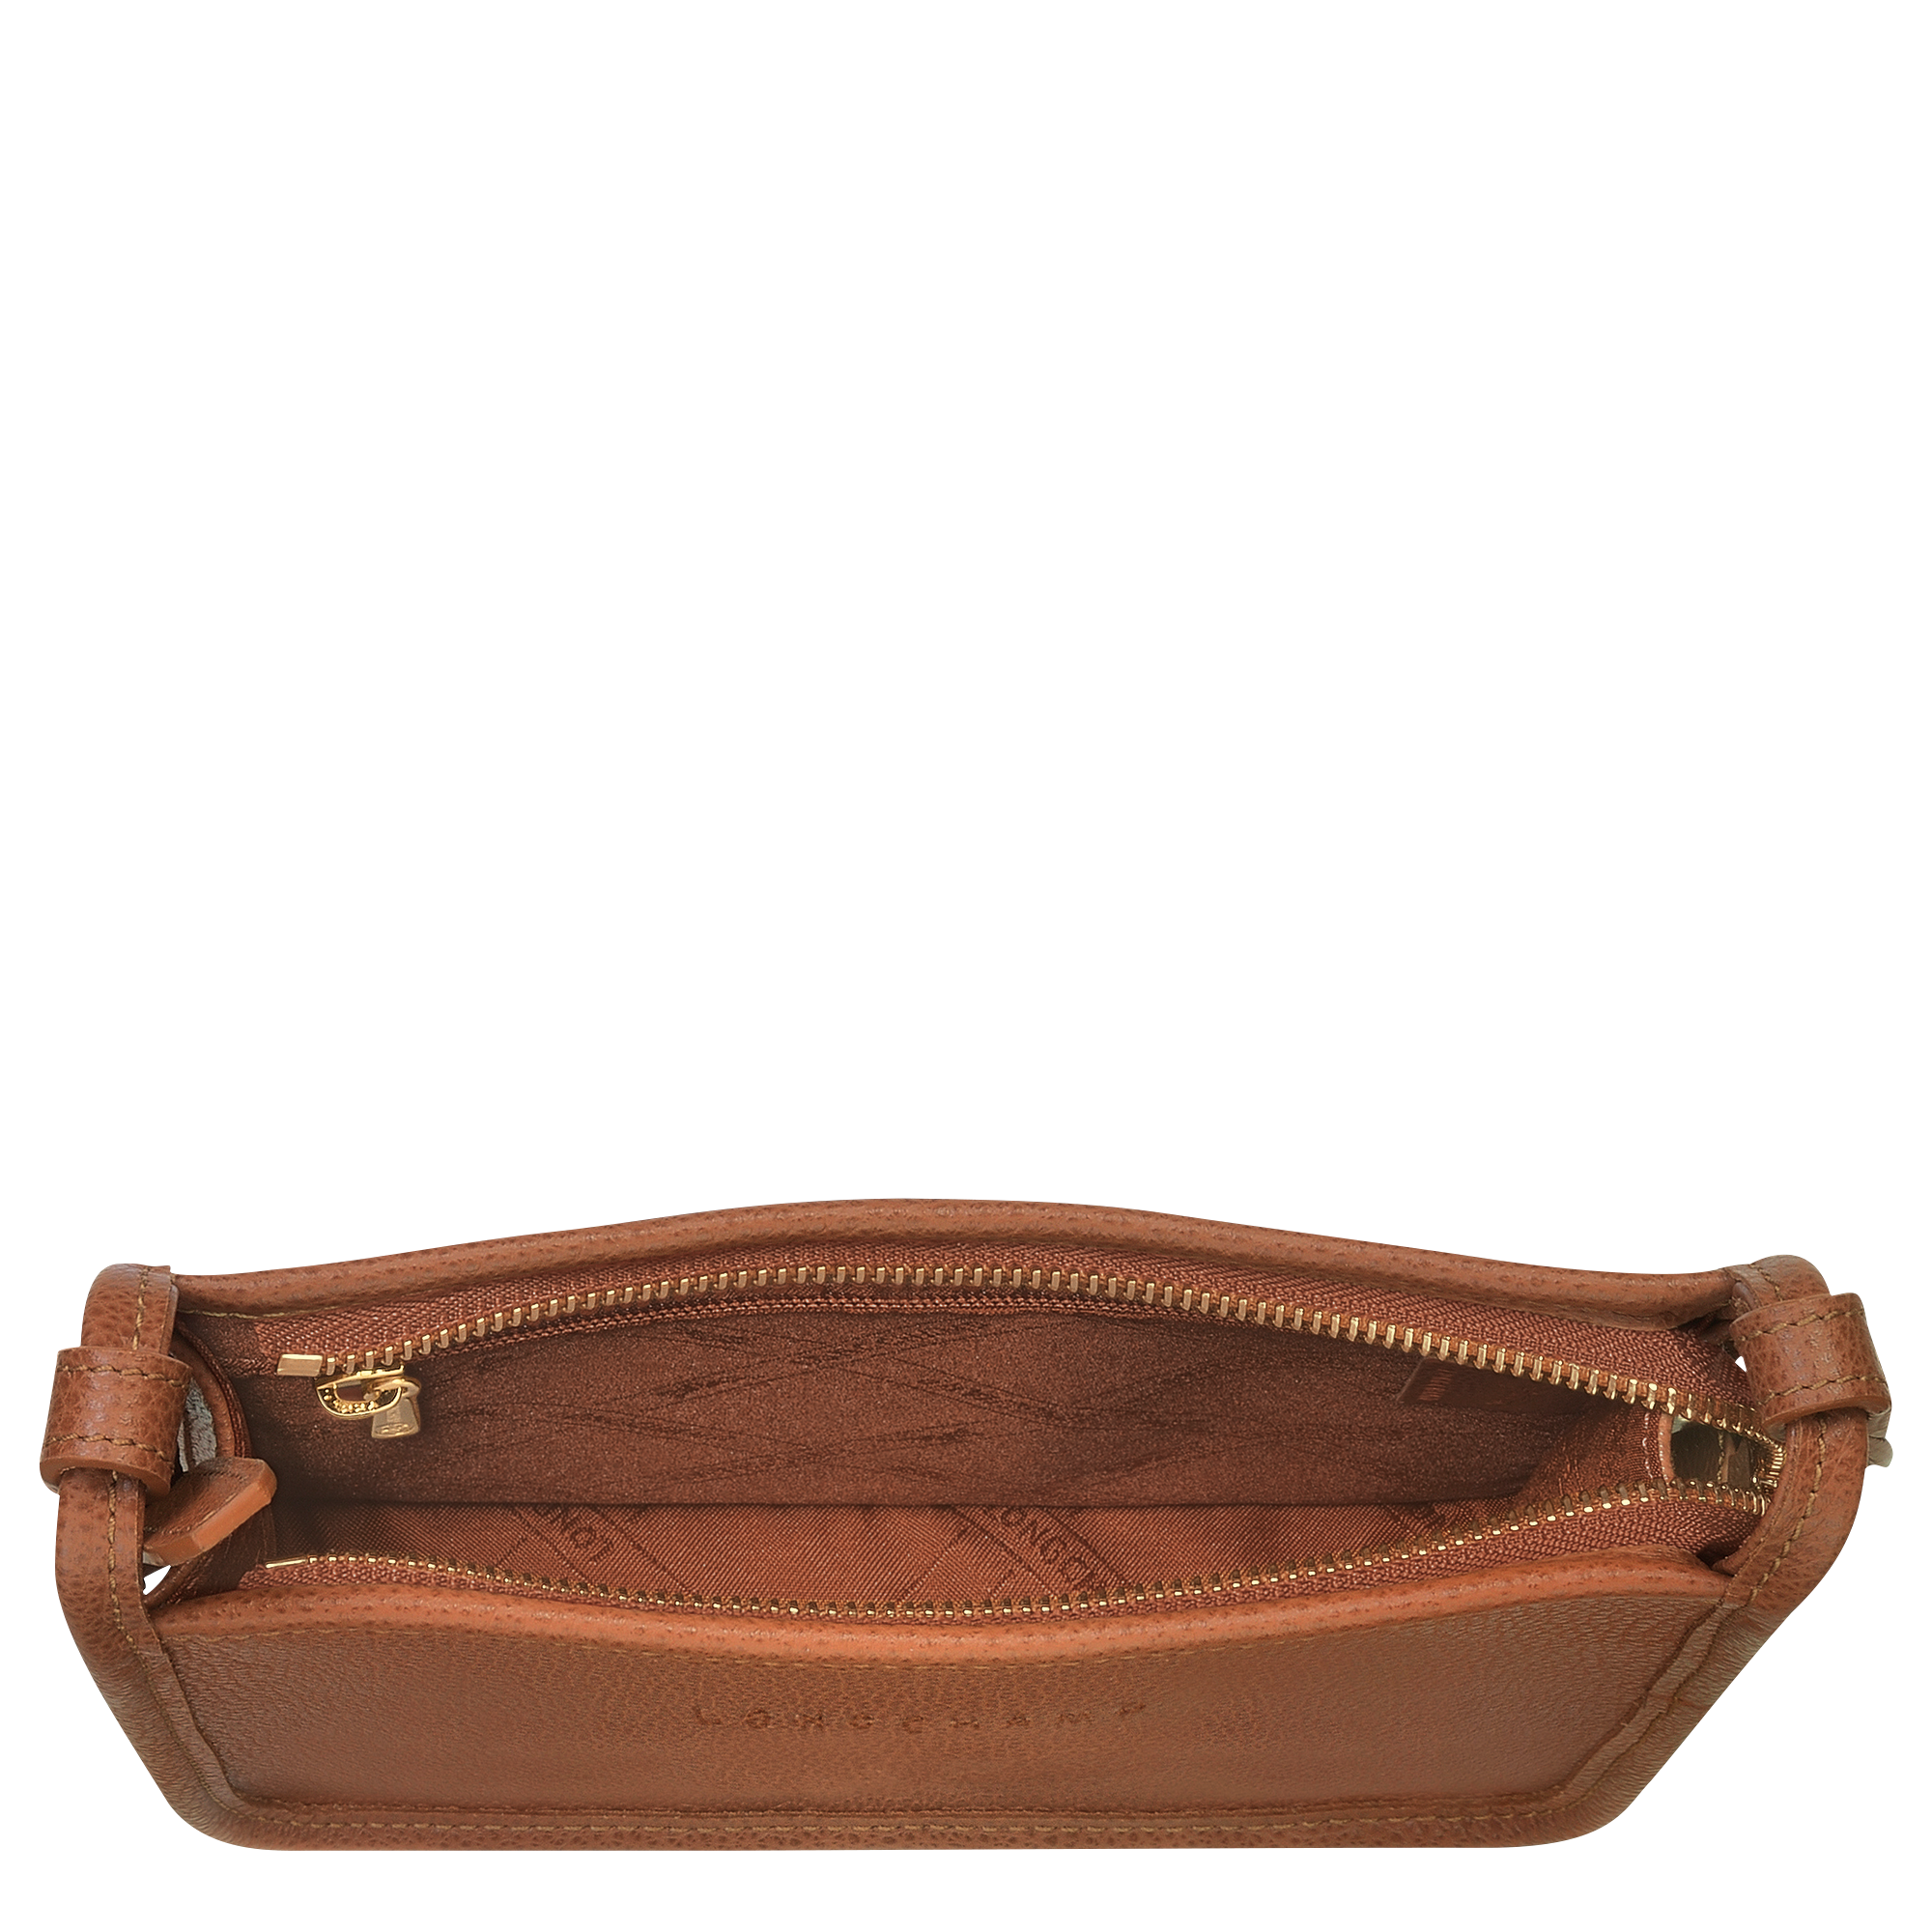 Le Foulonné S Crossbody bag Caramel - Leather (10135021121)